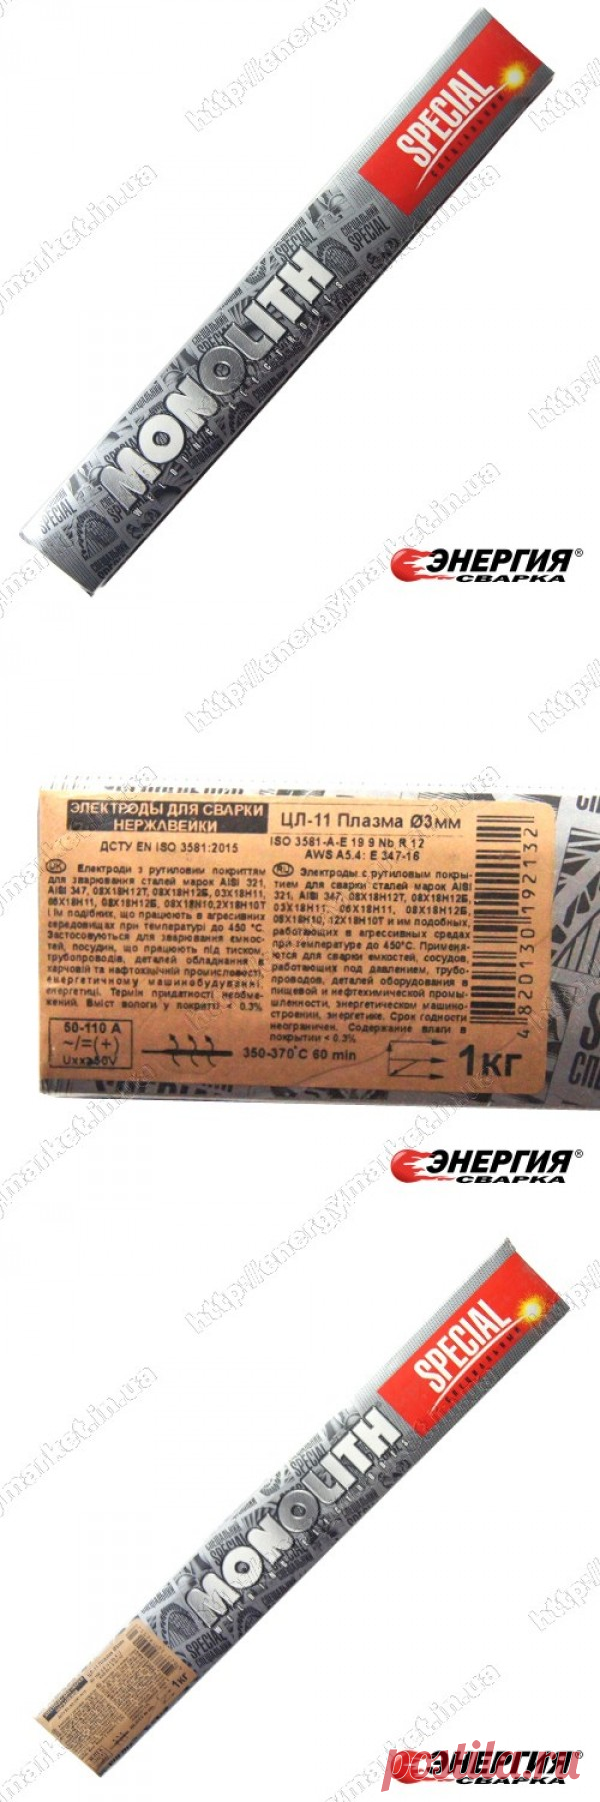 Сварочные электроды Монолит ЦЛ11 ф3 1кг для нержавейки купить цена Украине